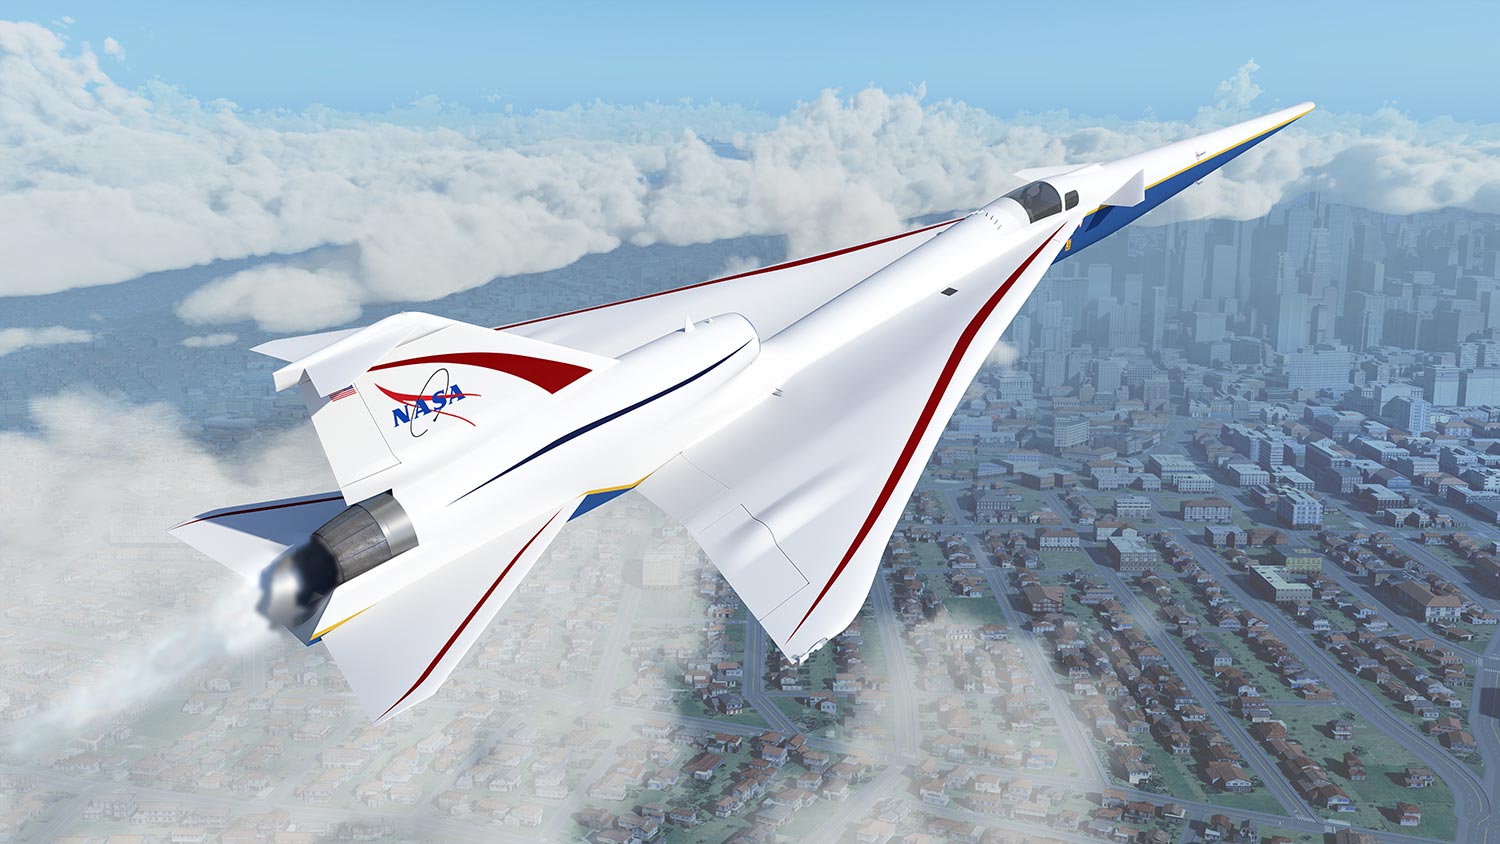 NASA X-59 Quiet SuperSonic Technology Aircraft